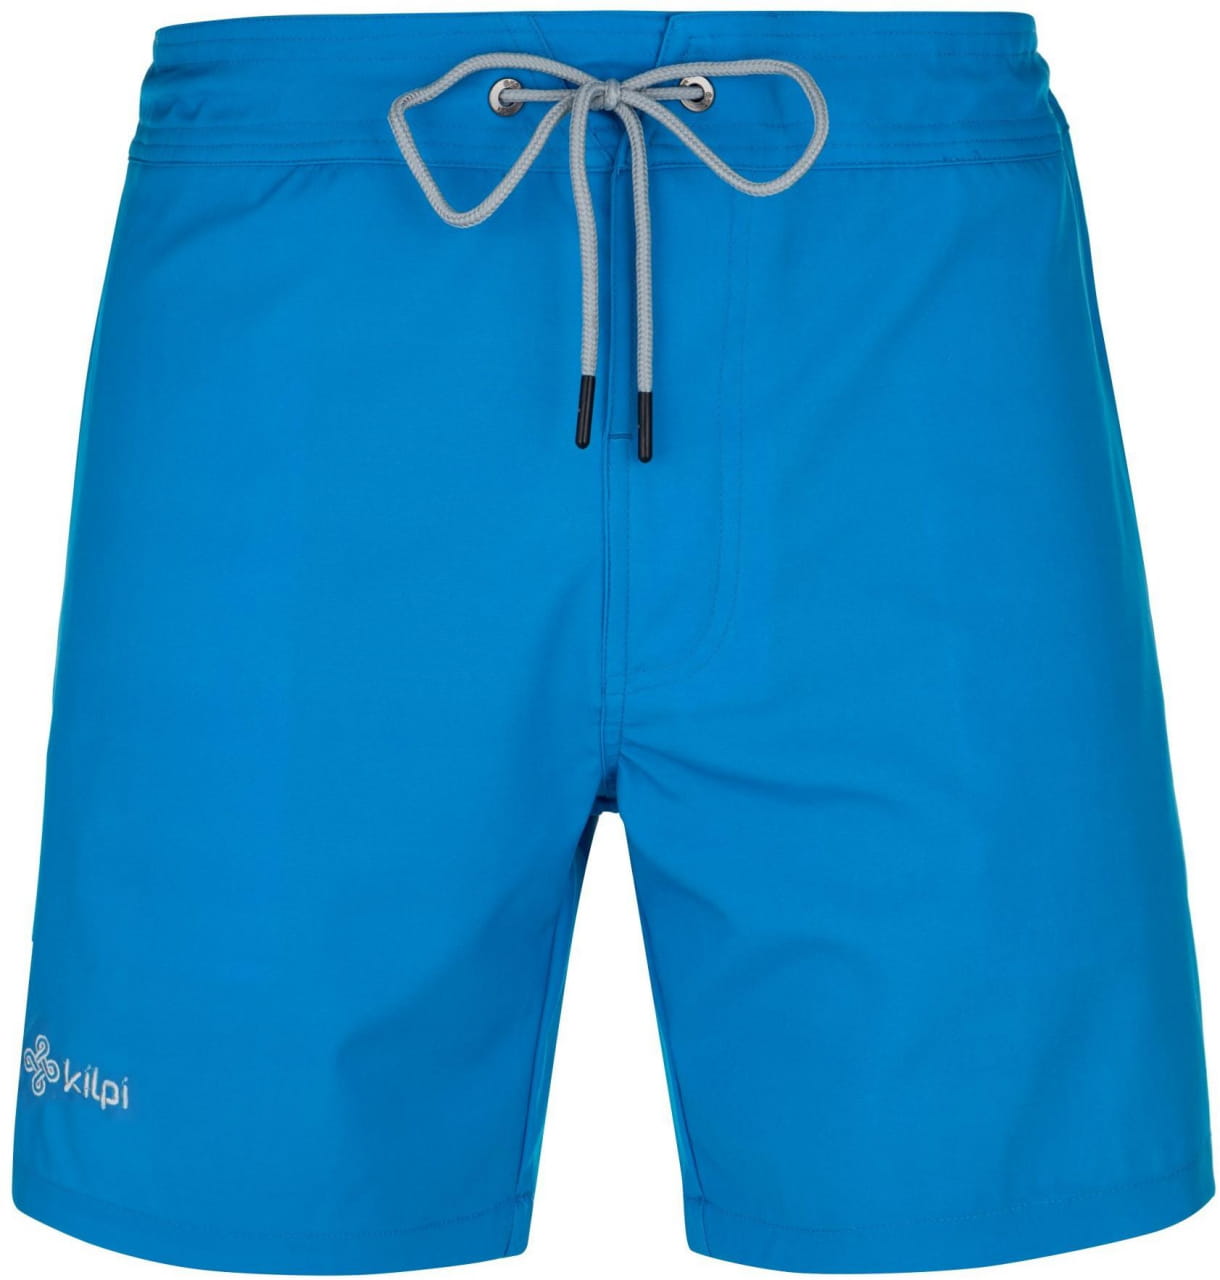 Shorts für Männer Kilpi Santed Modrá